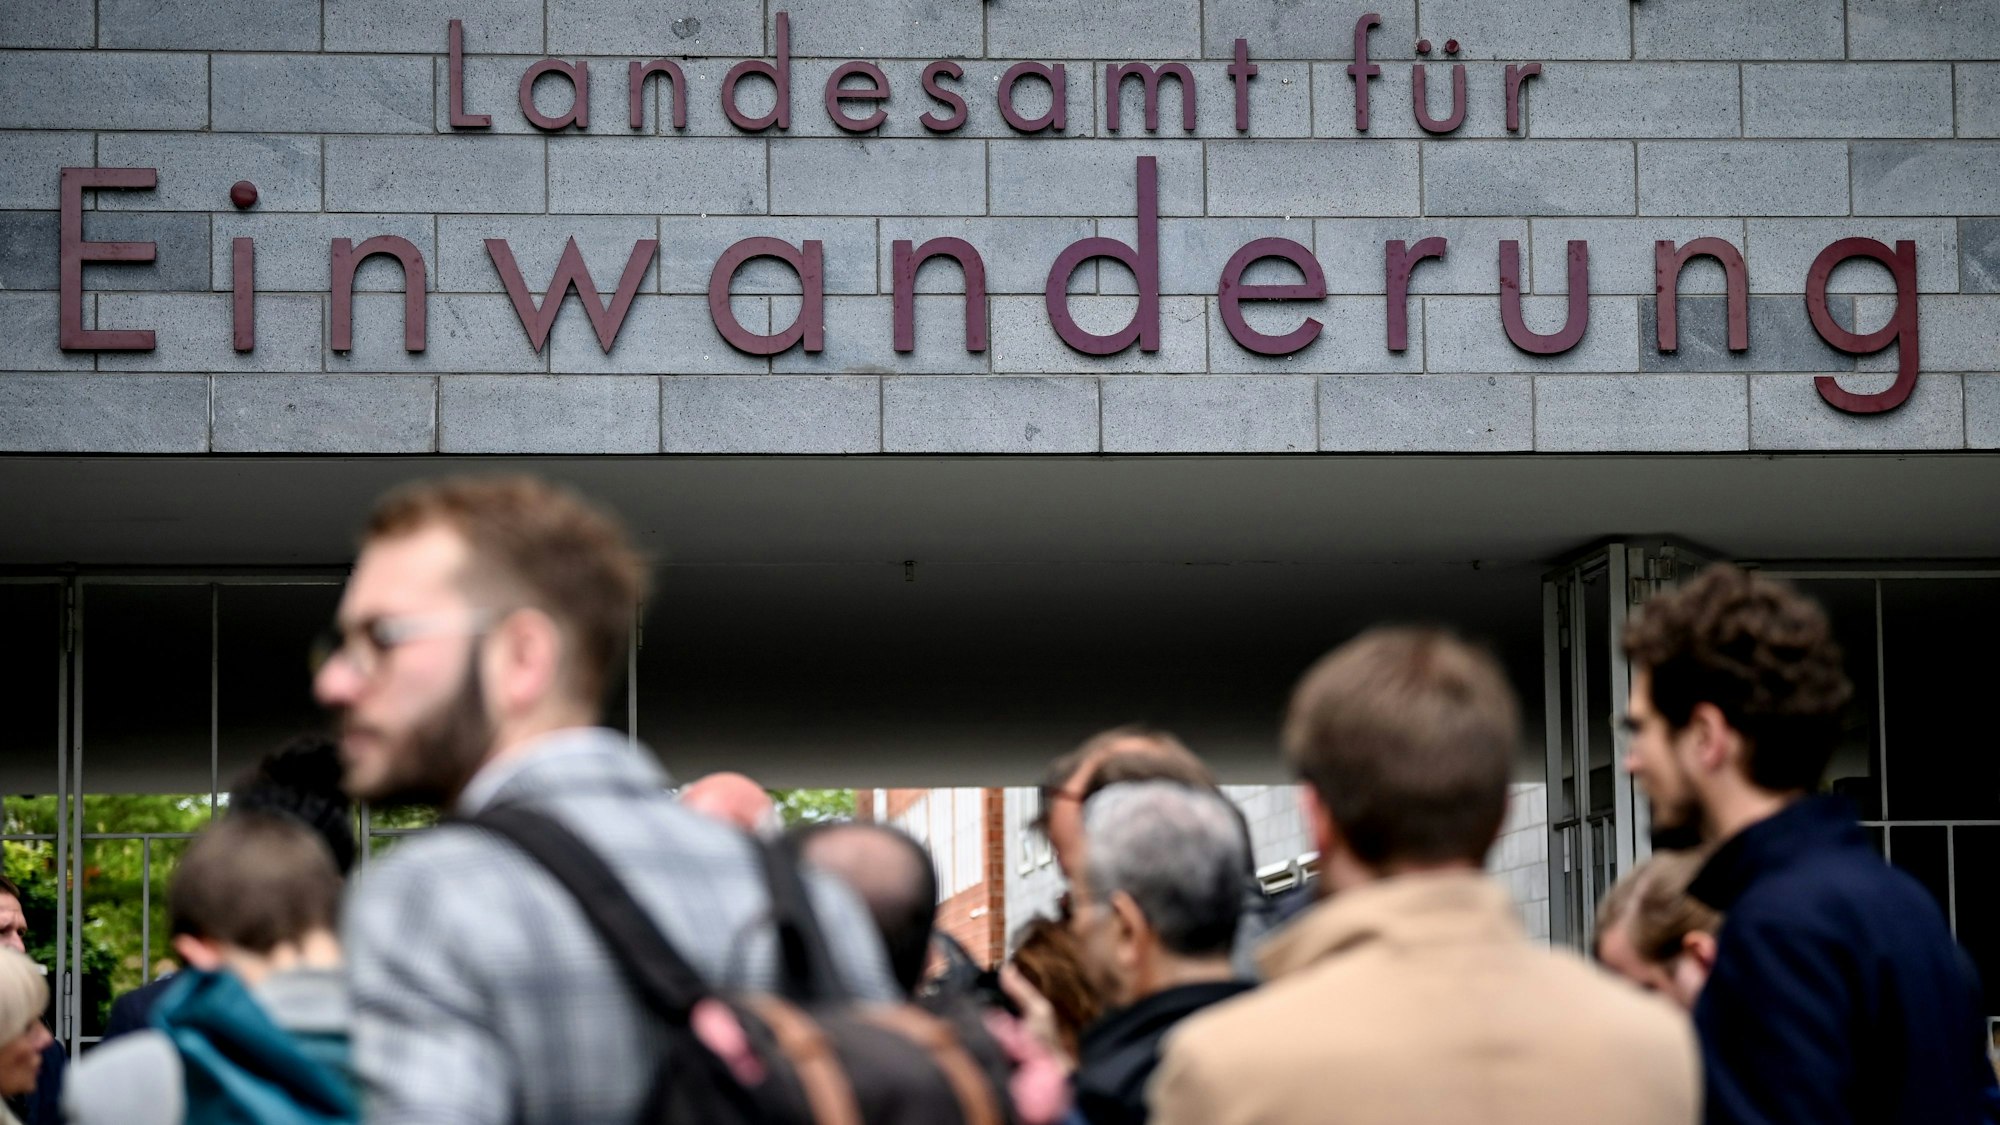 Menschen stehen vor dem Berliner Landesamt für Einwanderung in Berlin